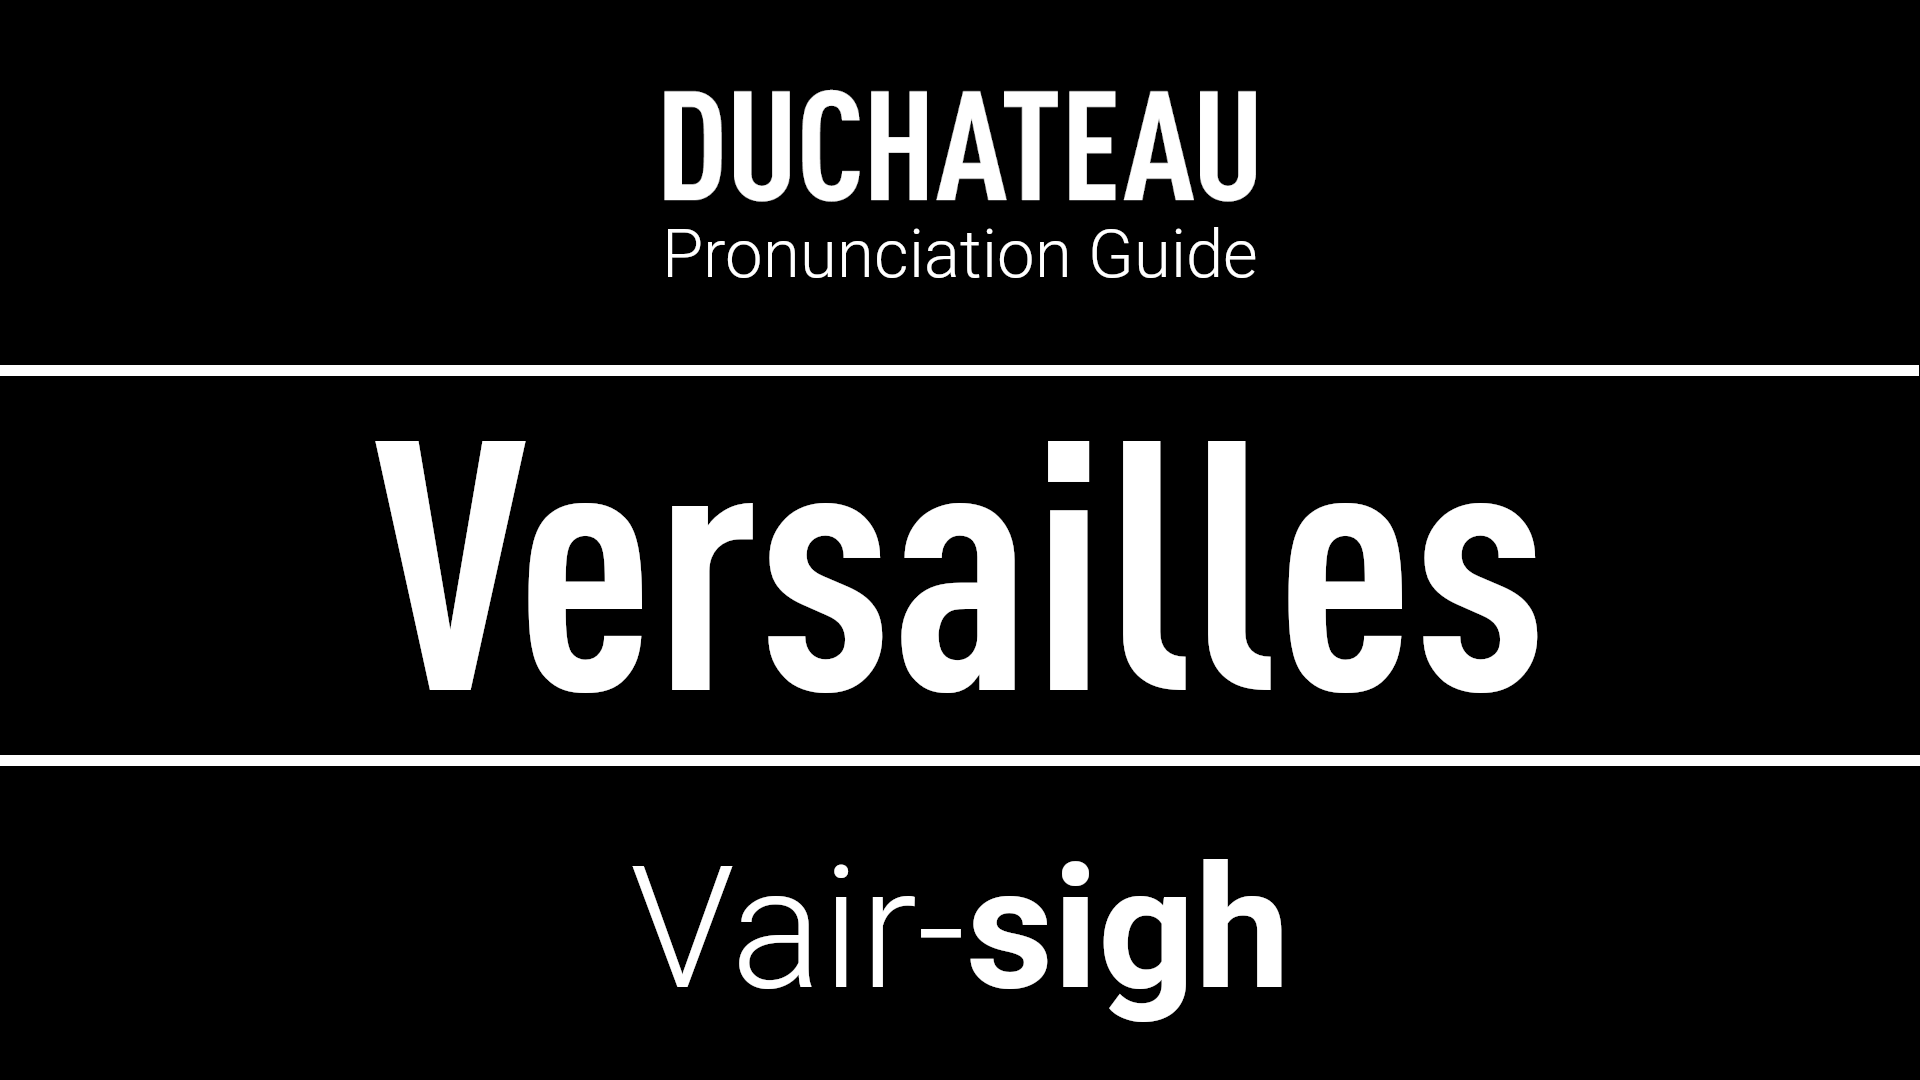 Versailles Pronunciation